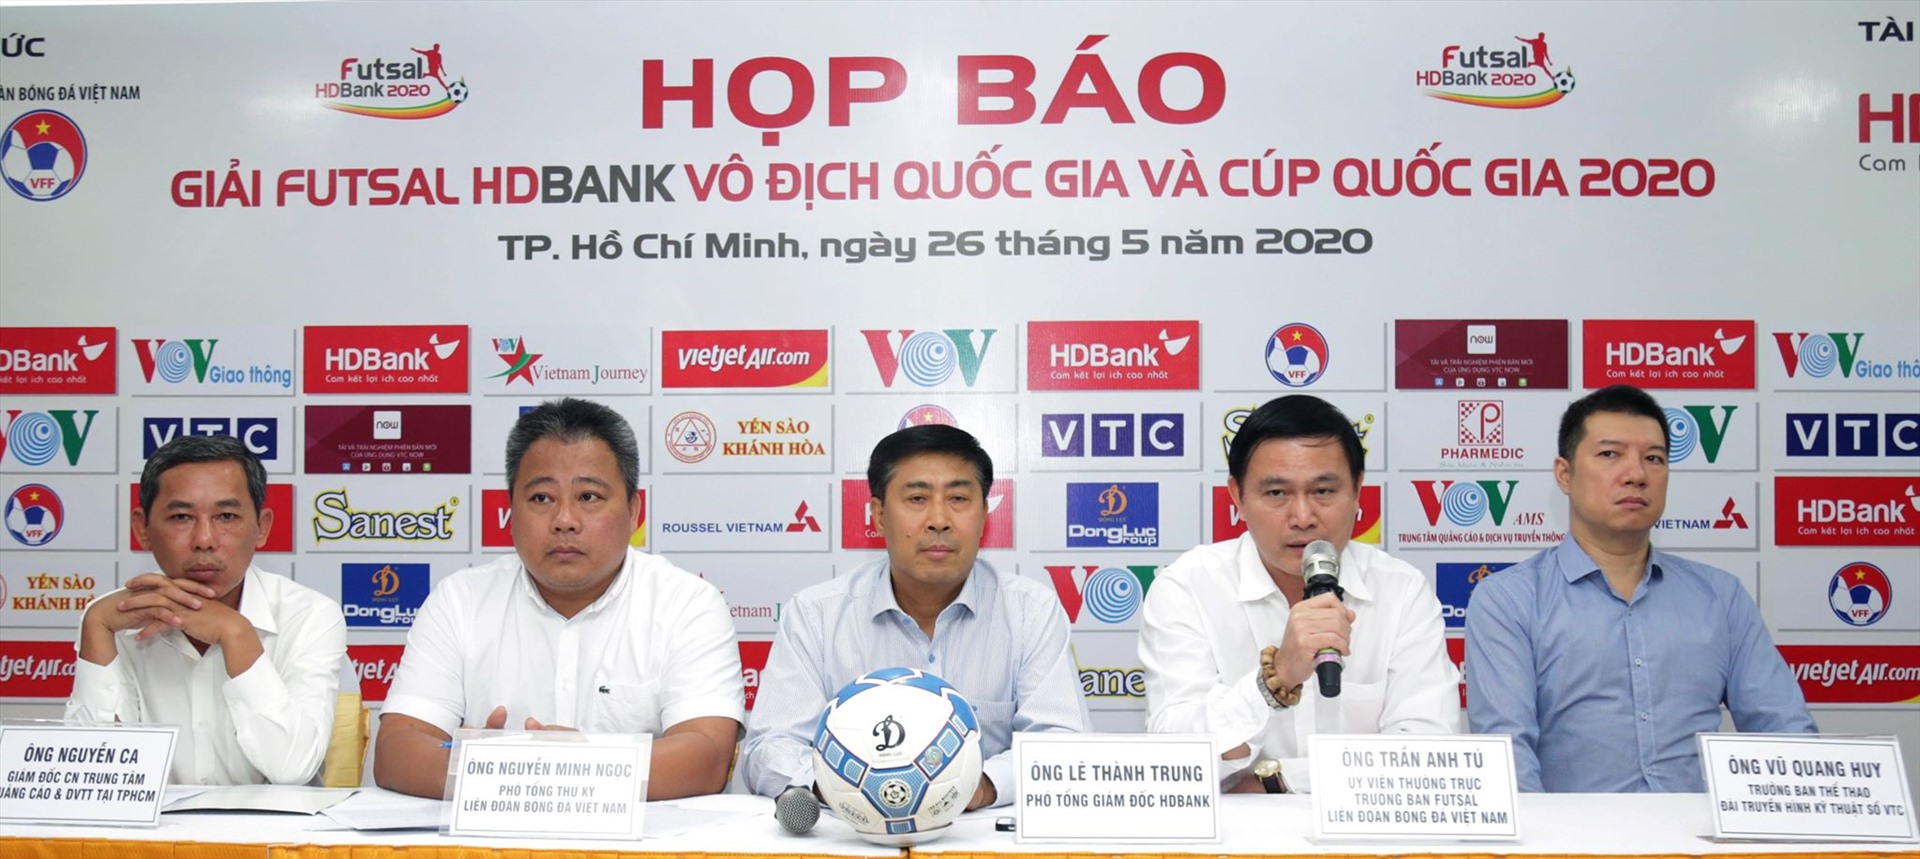 Các giải bóng đá chuyên nghiệp Việt Nam đã trở lại sau thời gian dài tạm hoãn vì dịch COVID-19. Ảnh: Đ.T